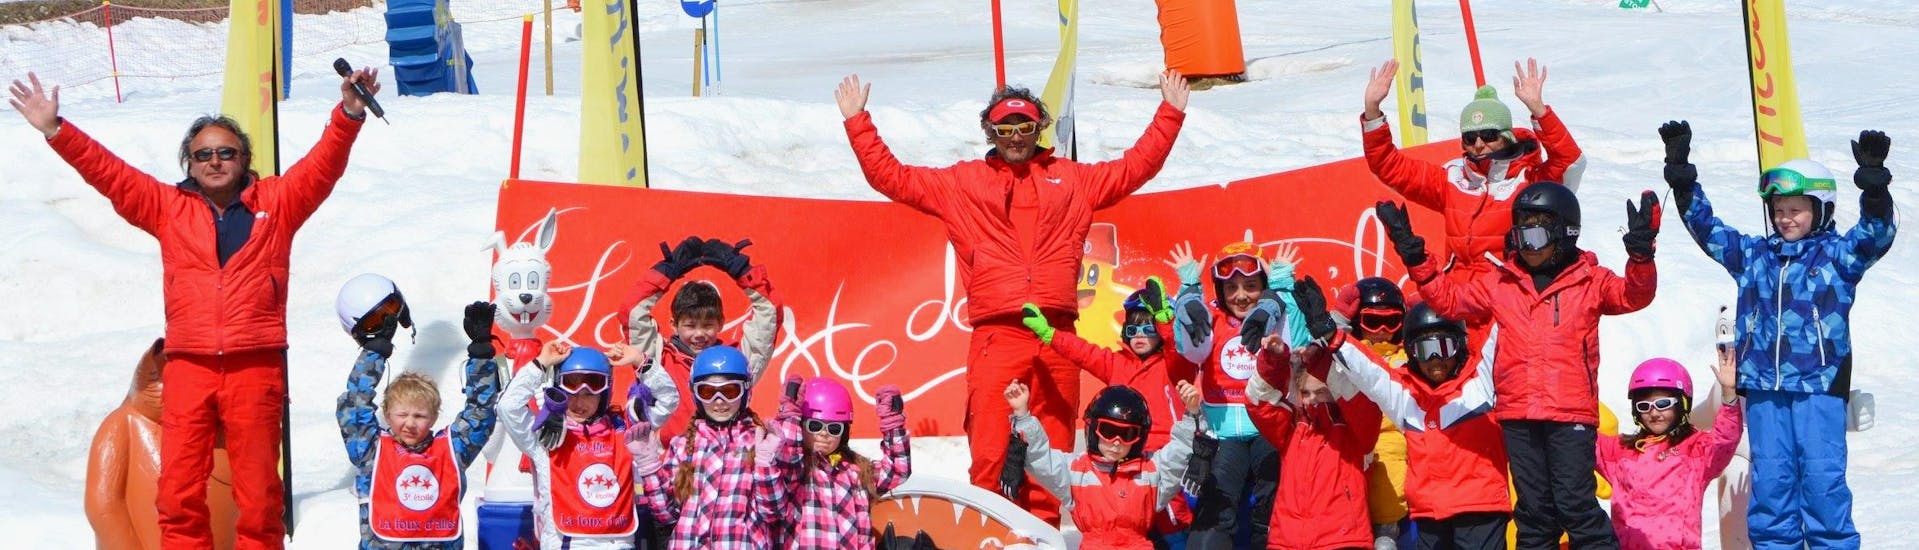 Kinder-Skikurs ab 4 Jahren mit Erfahrung.